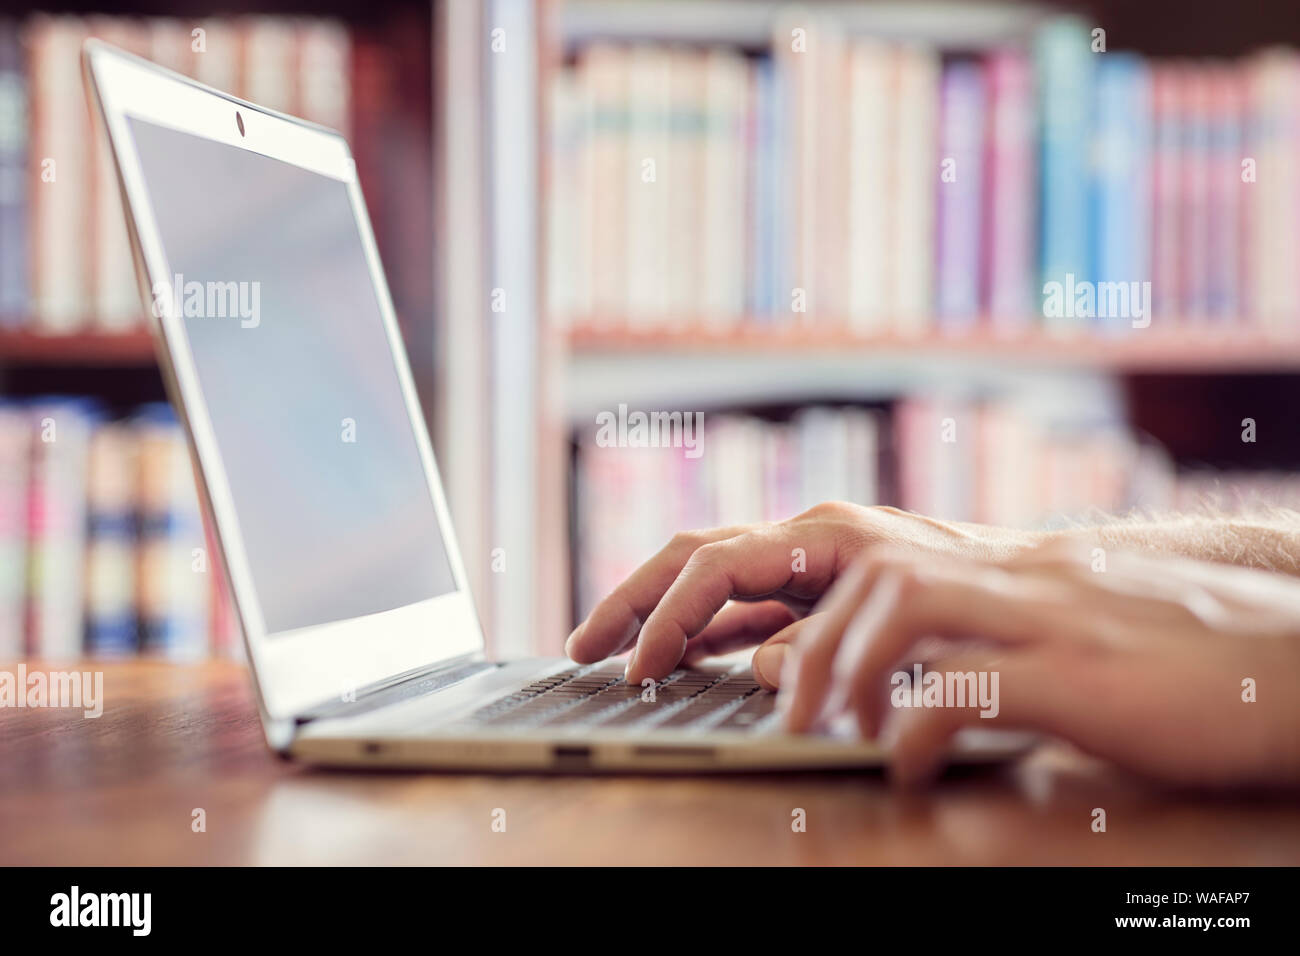 Hände schreiben auf Laptop in der Bibliothek Konzept für Bildung, Schriftsteller oder Forschung Stockfoto